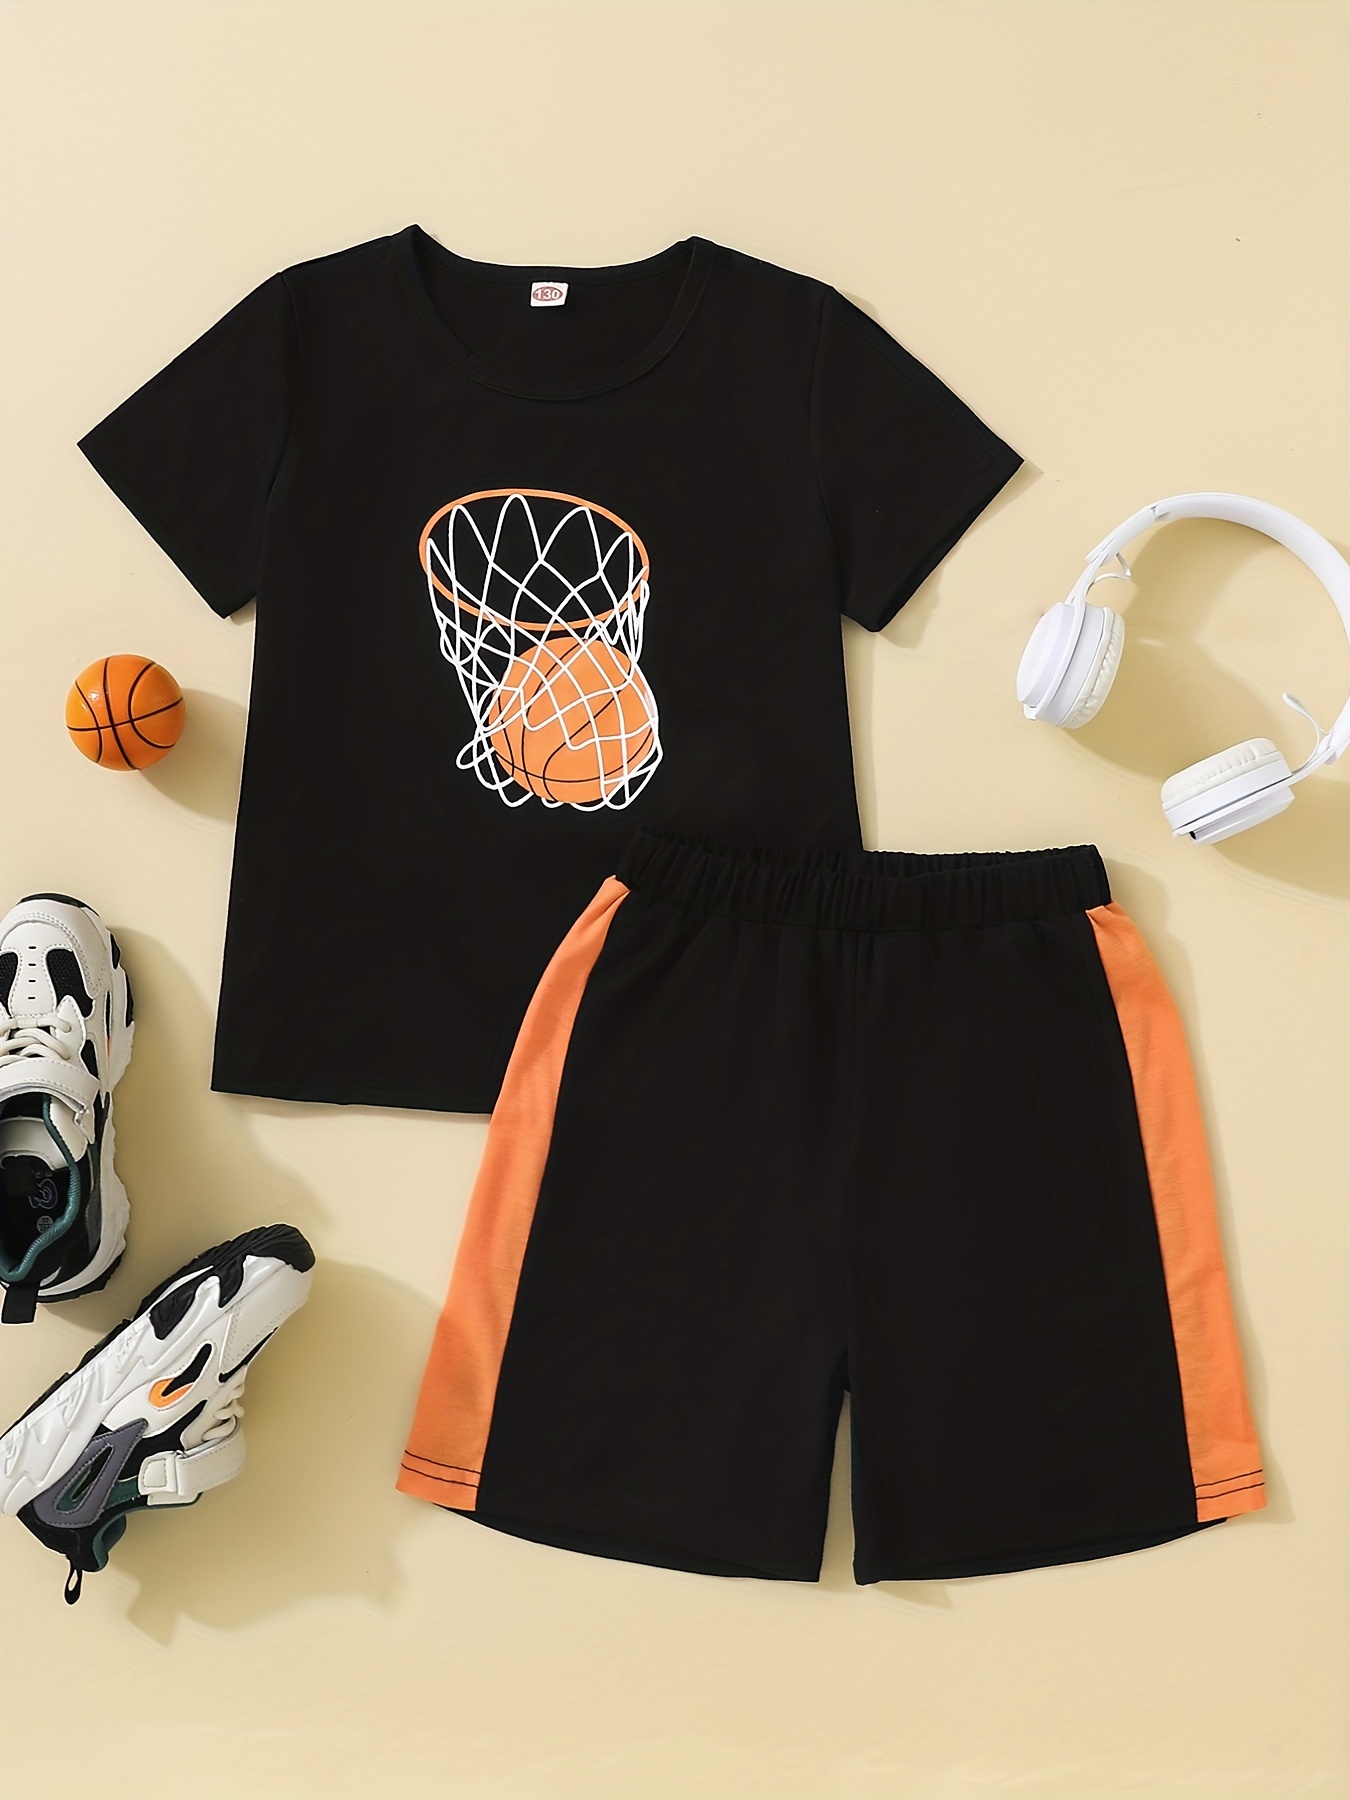 Camiseta Baloncesto Niño - Conjunto Baloncesto Niño,Trajes de